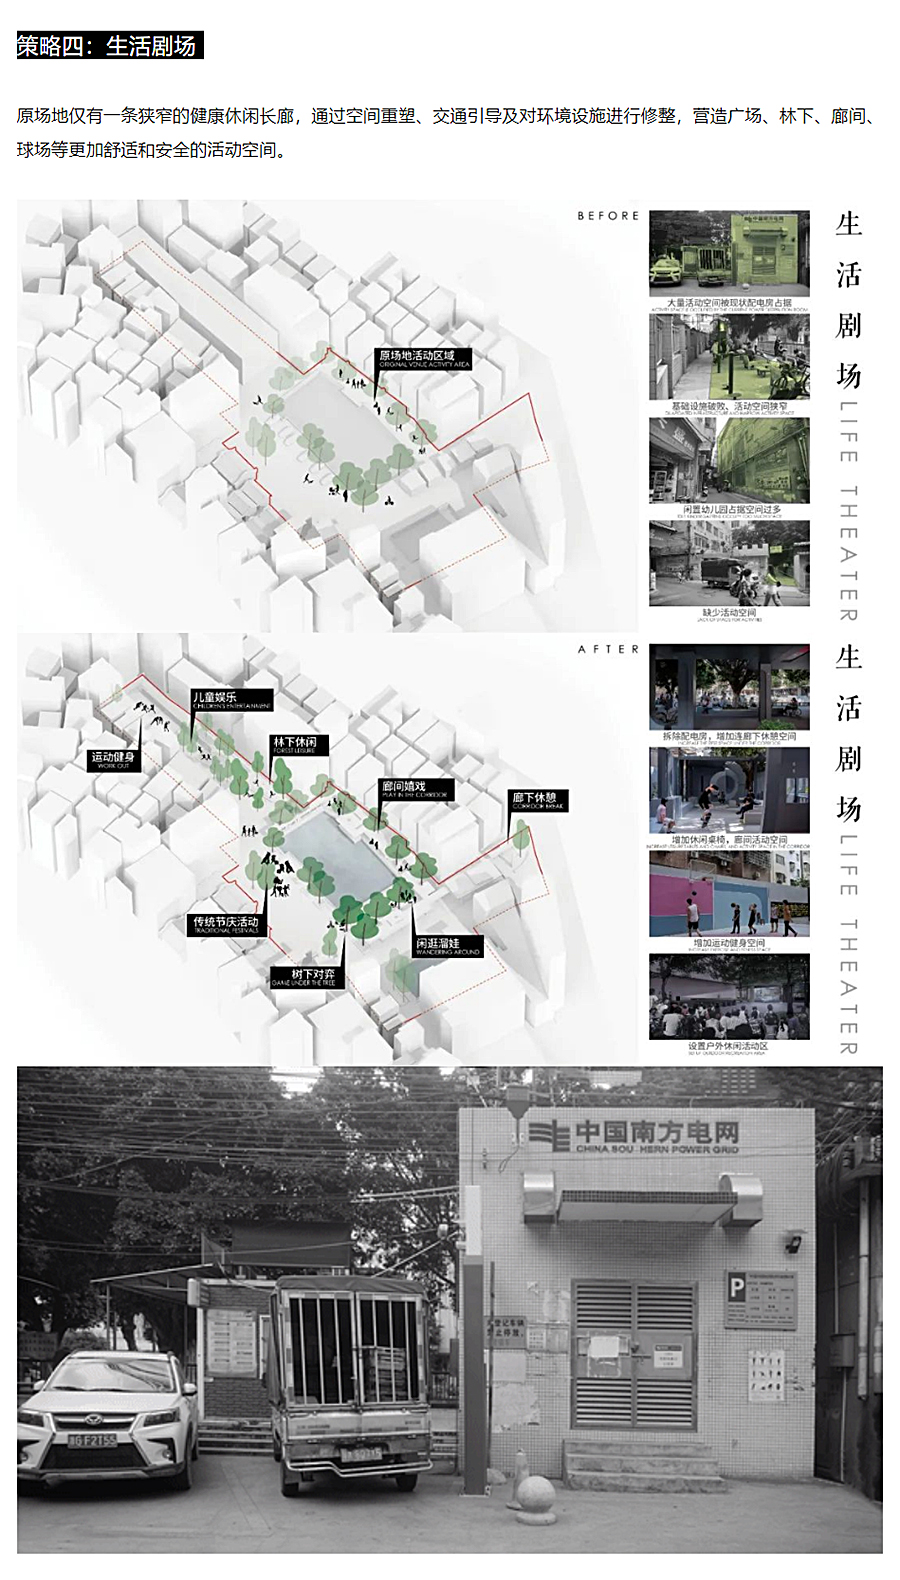 不一样的市井-_-城市更新：广州望岗望南公园_0010_图层-11.jpg